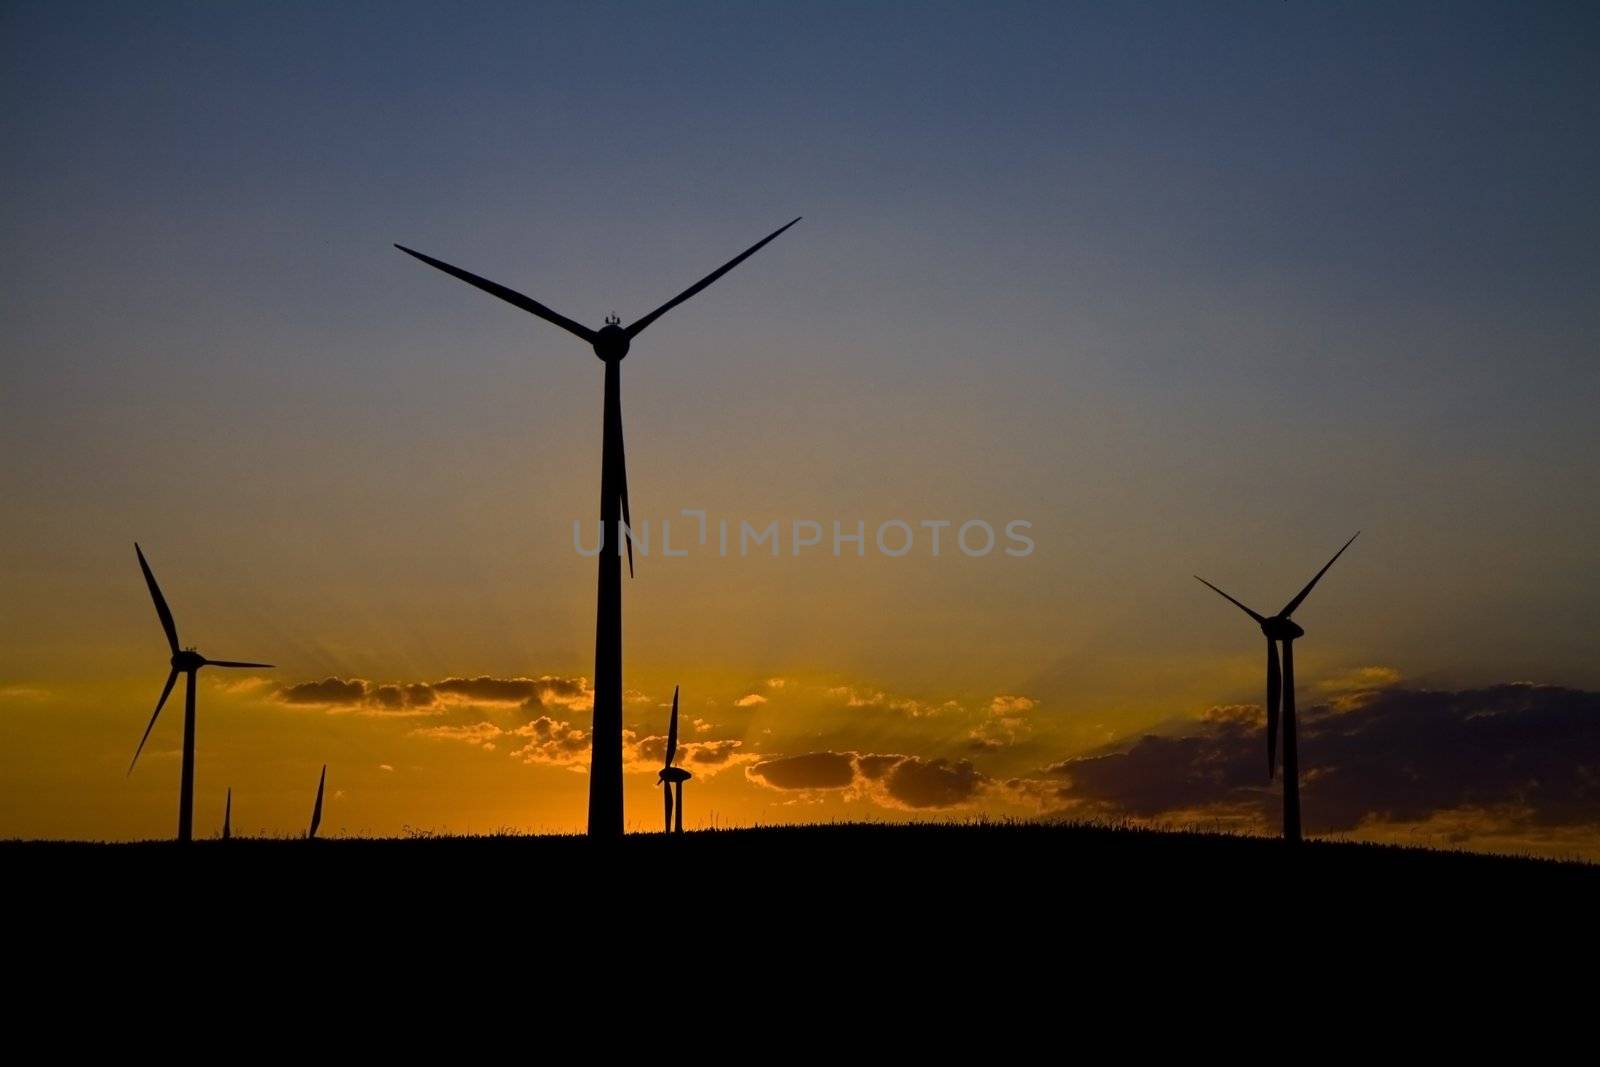 Windmills at sunset by Gbuglok